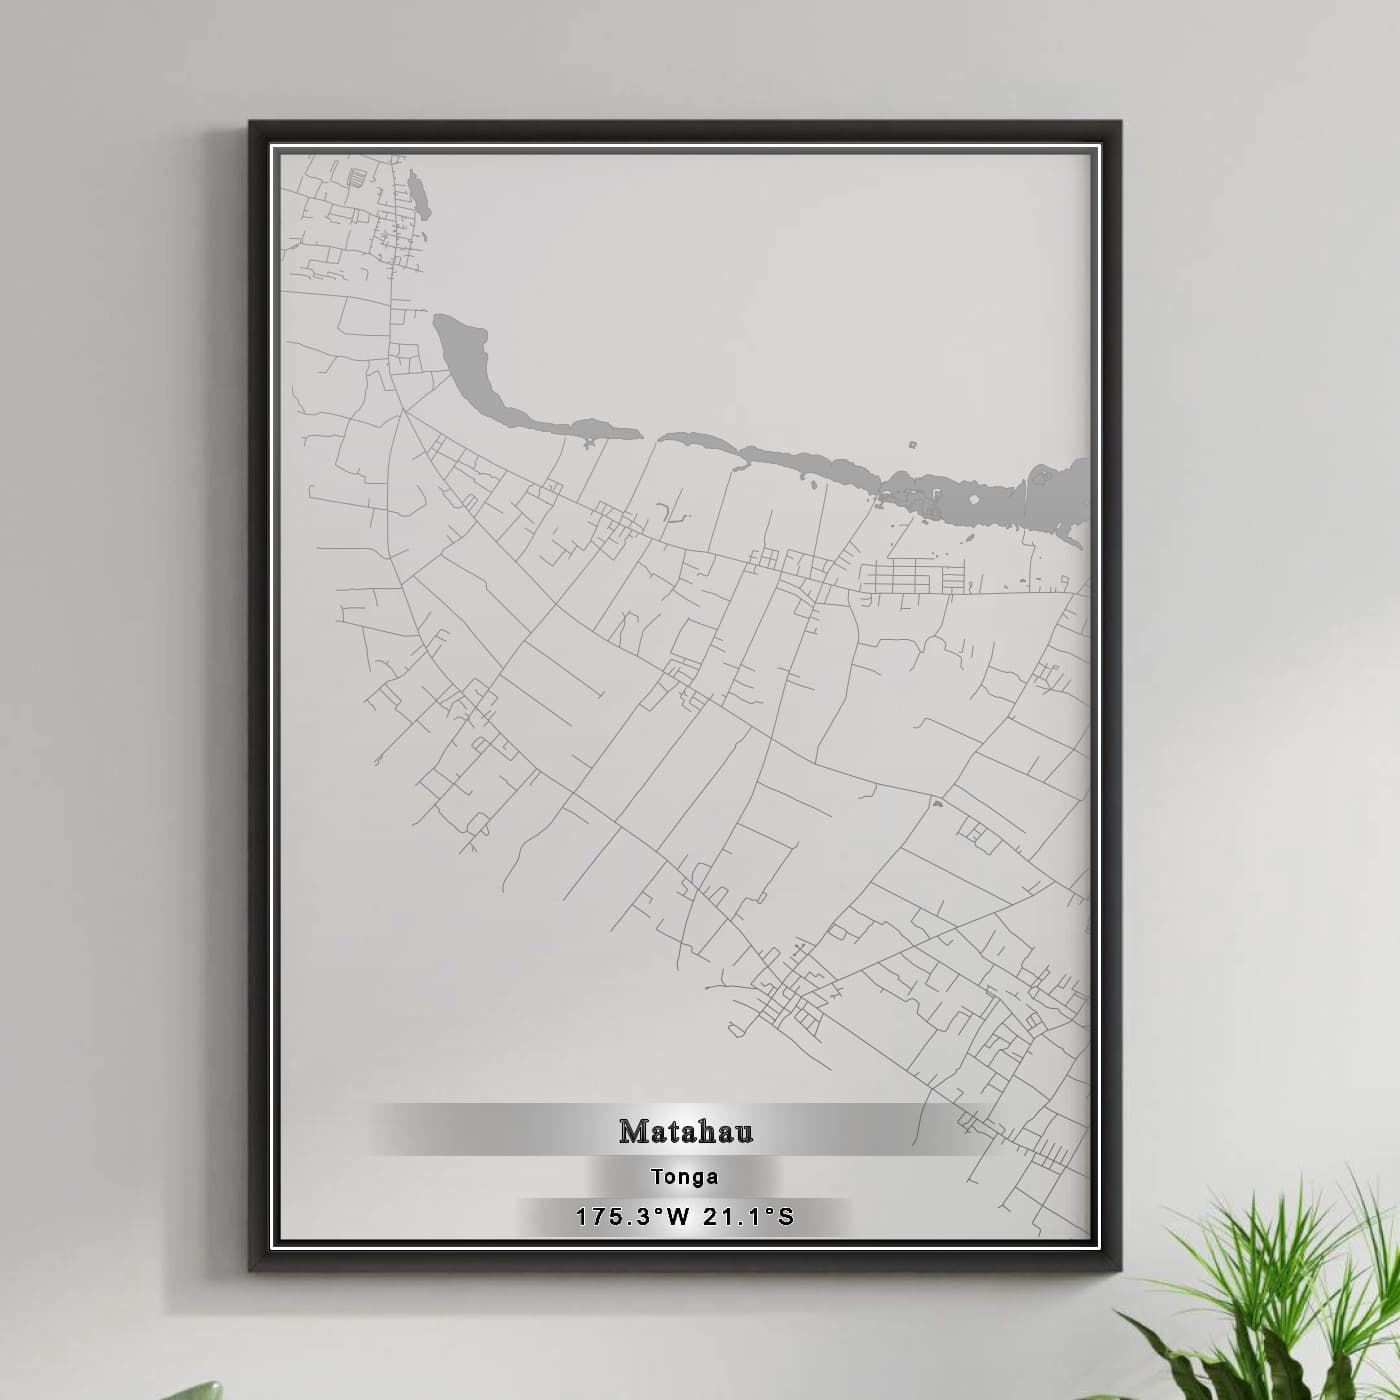 ROAD MAP OF MATAHAU, TONGA BY MAPBAKES